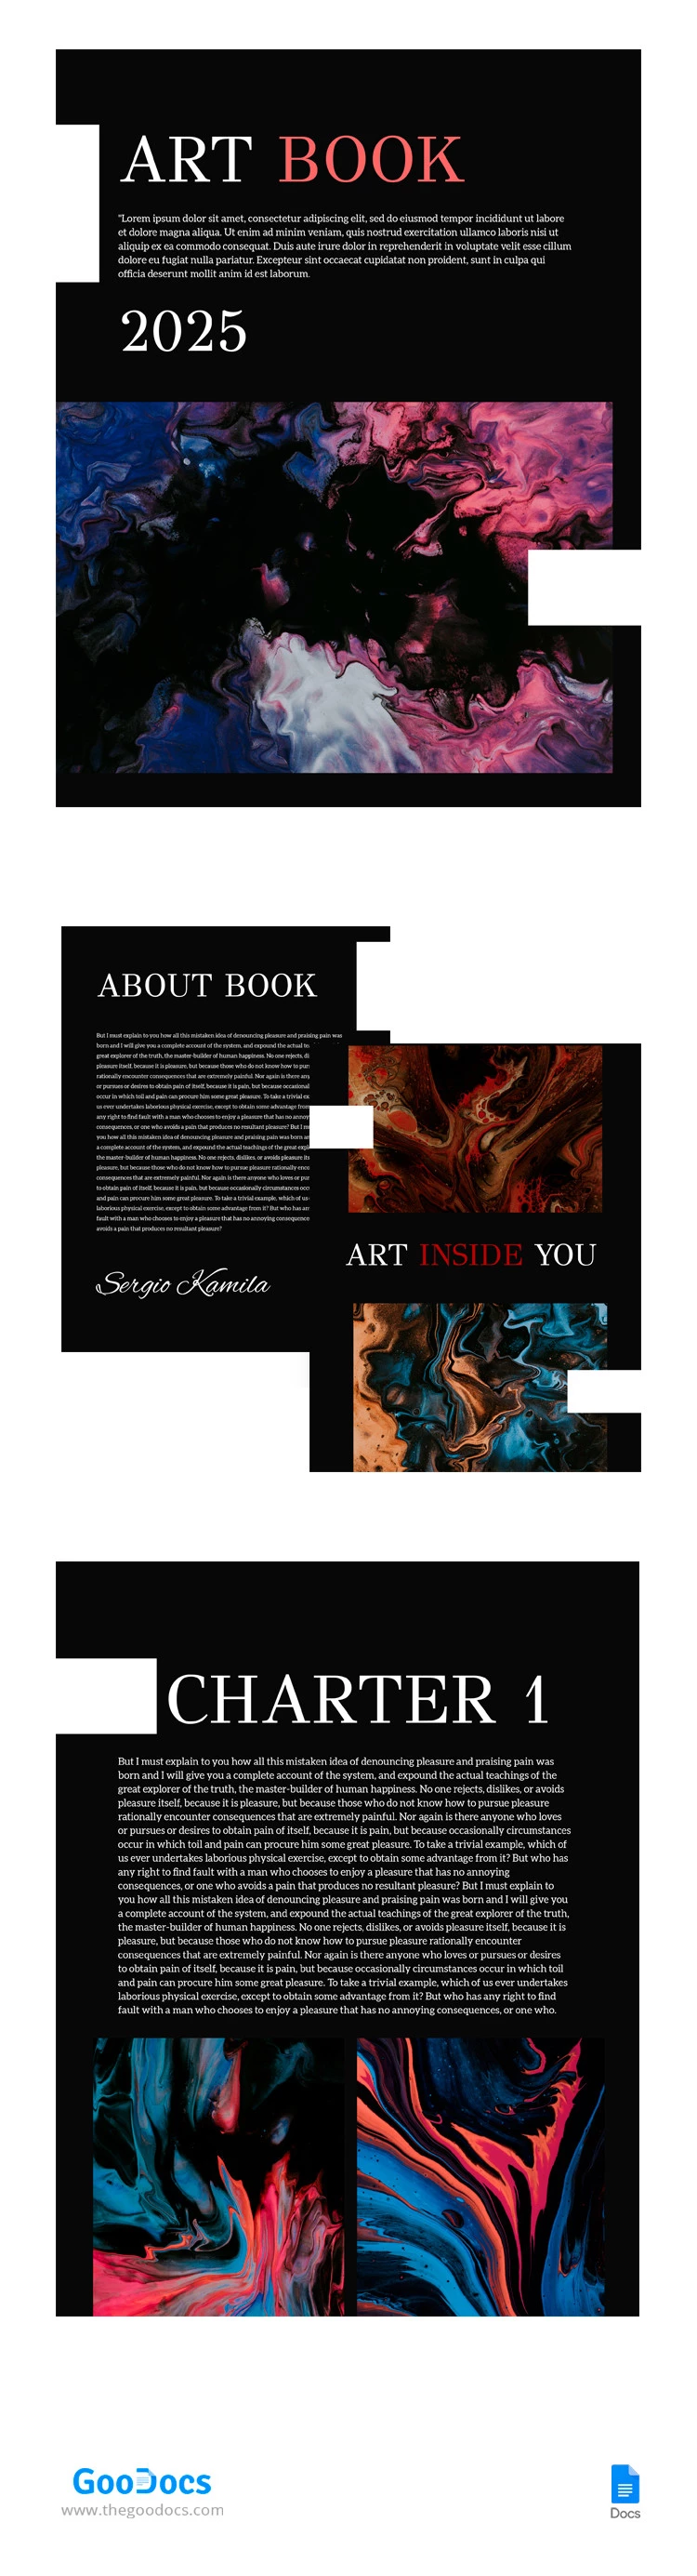 Libro de Arte Abstracto - free Google Docs Template - 10065623